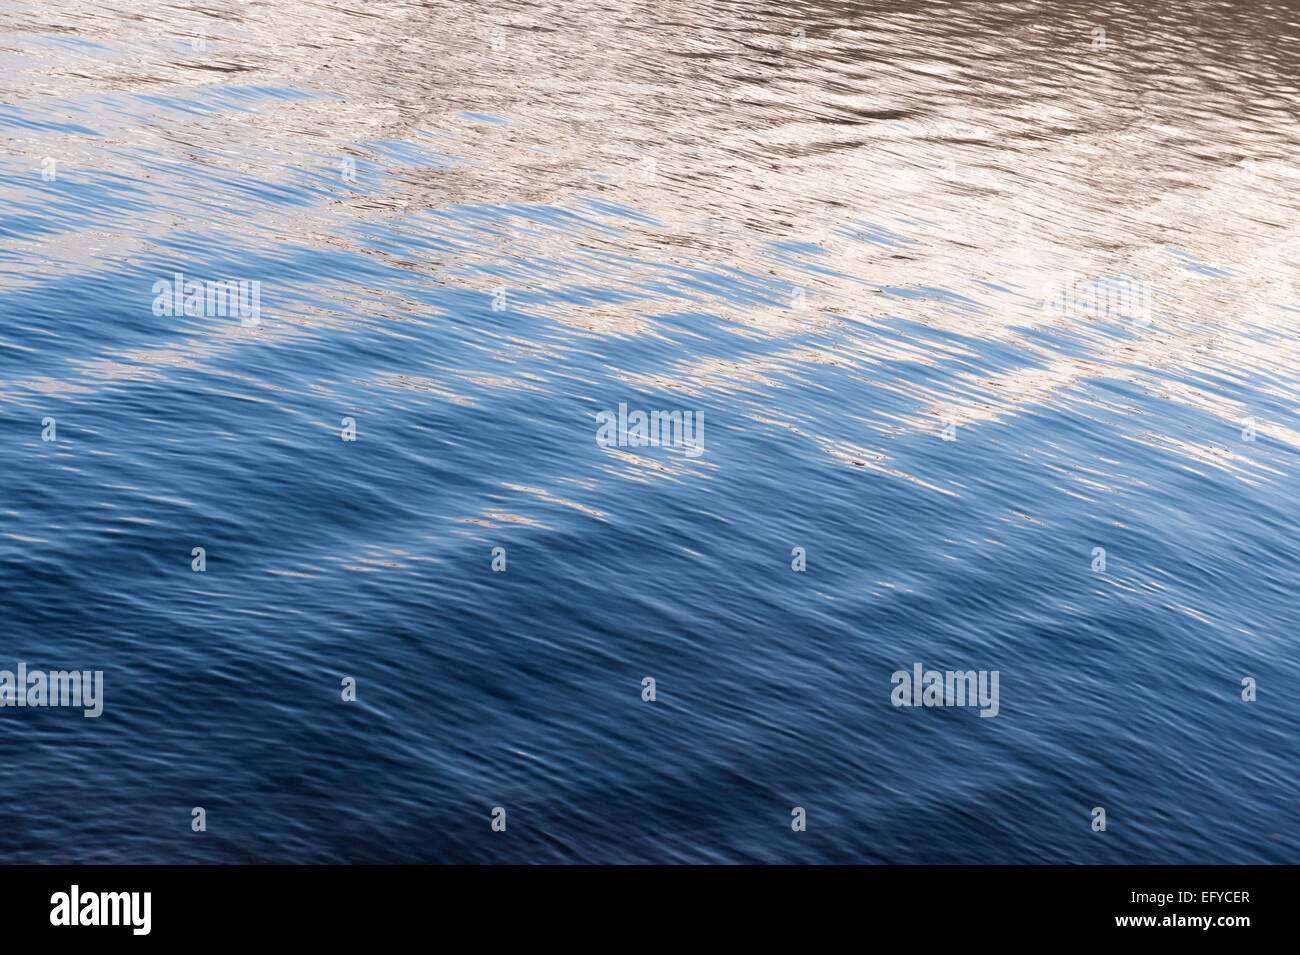 Wildwasser-blaue Welle Muster auf einem schottischen loch Stockfoto